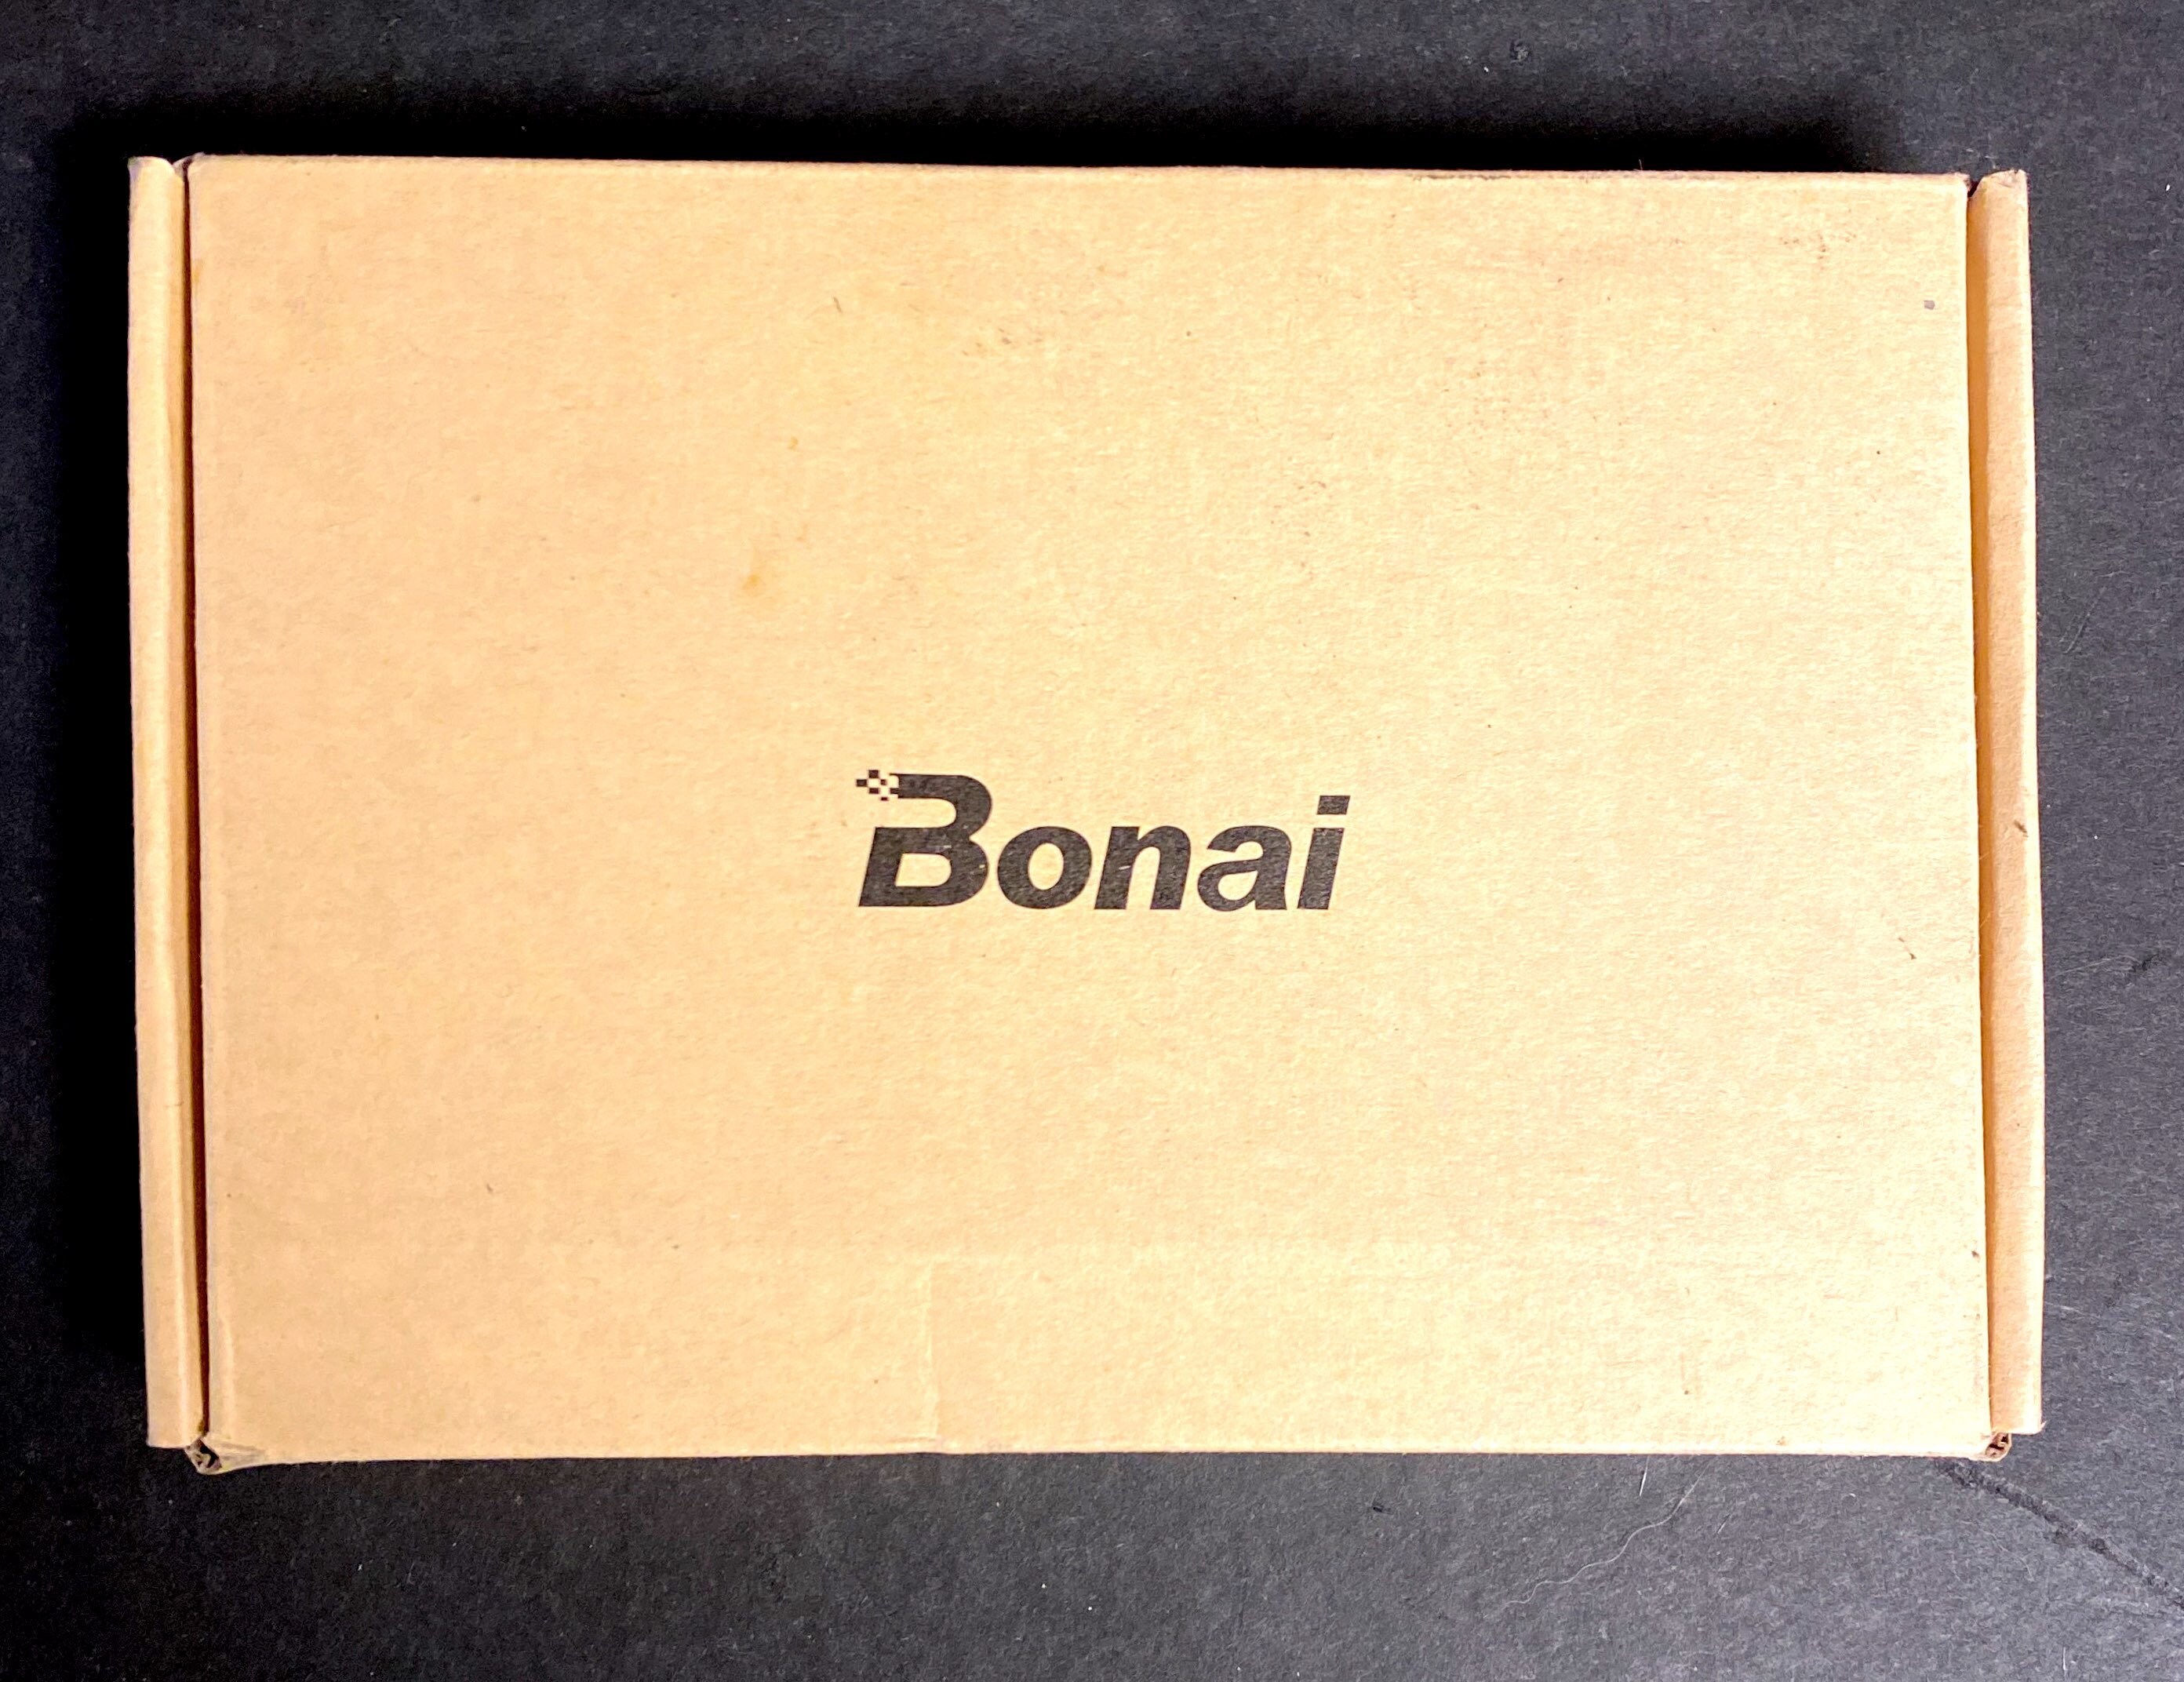  BONAI Cargador portátil de 12000 mAh batería portátil